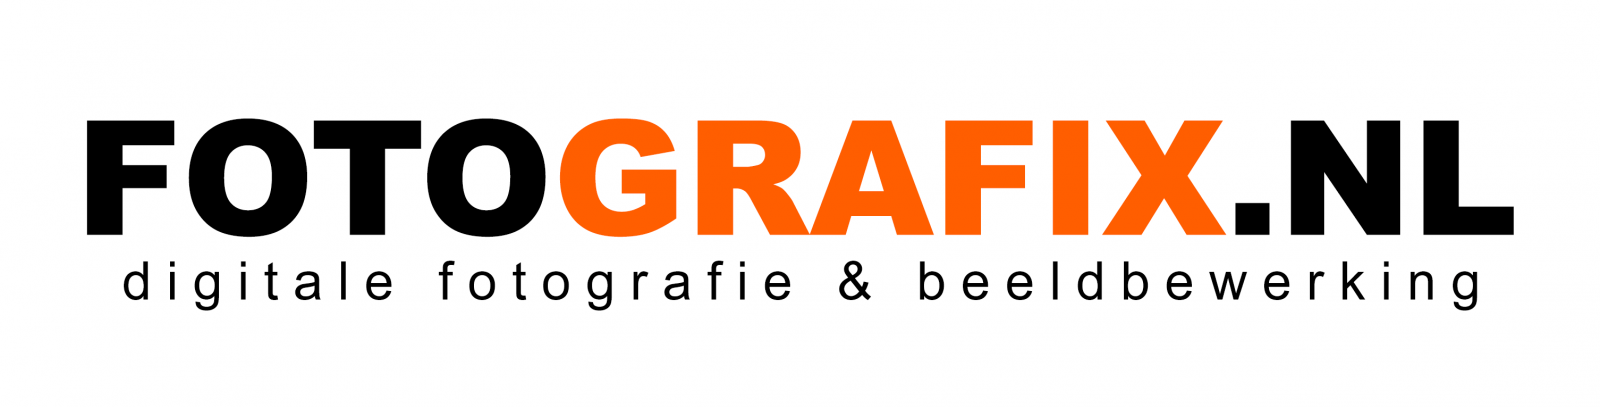 FOTOGRAFIX.NL logo